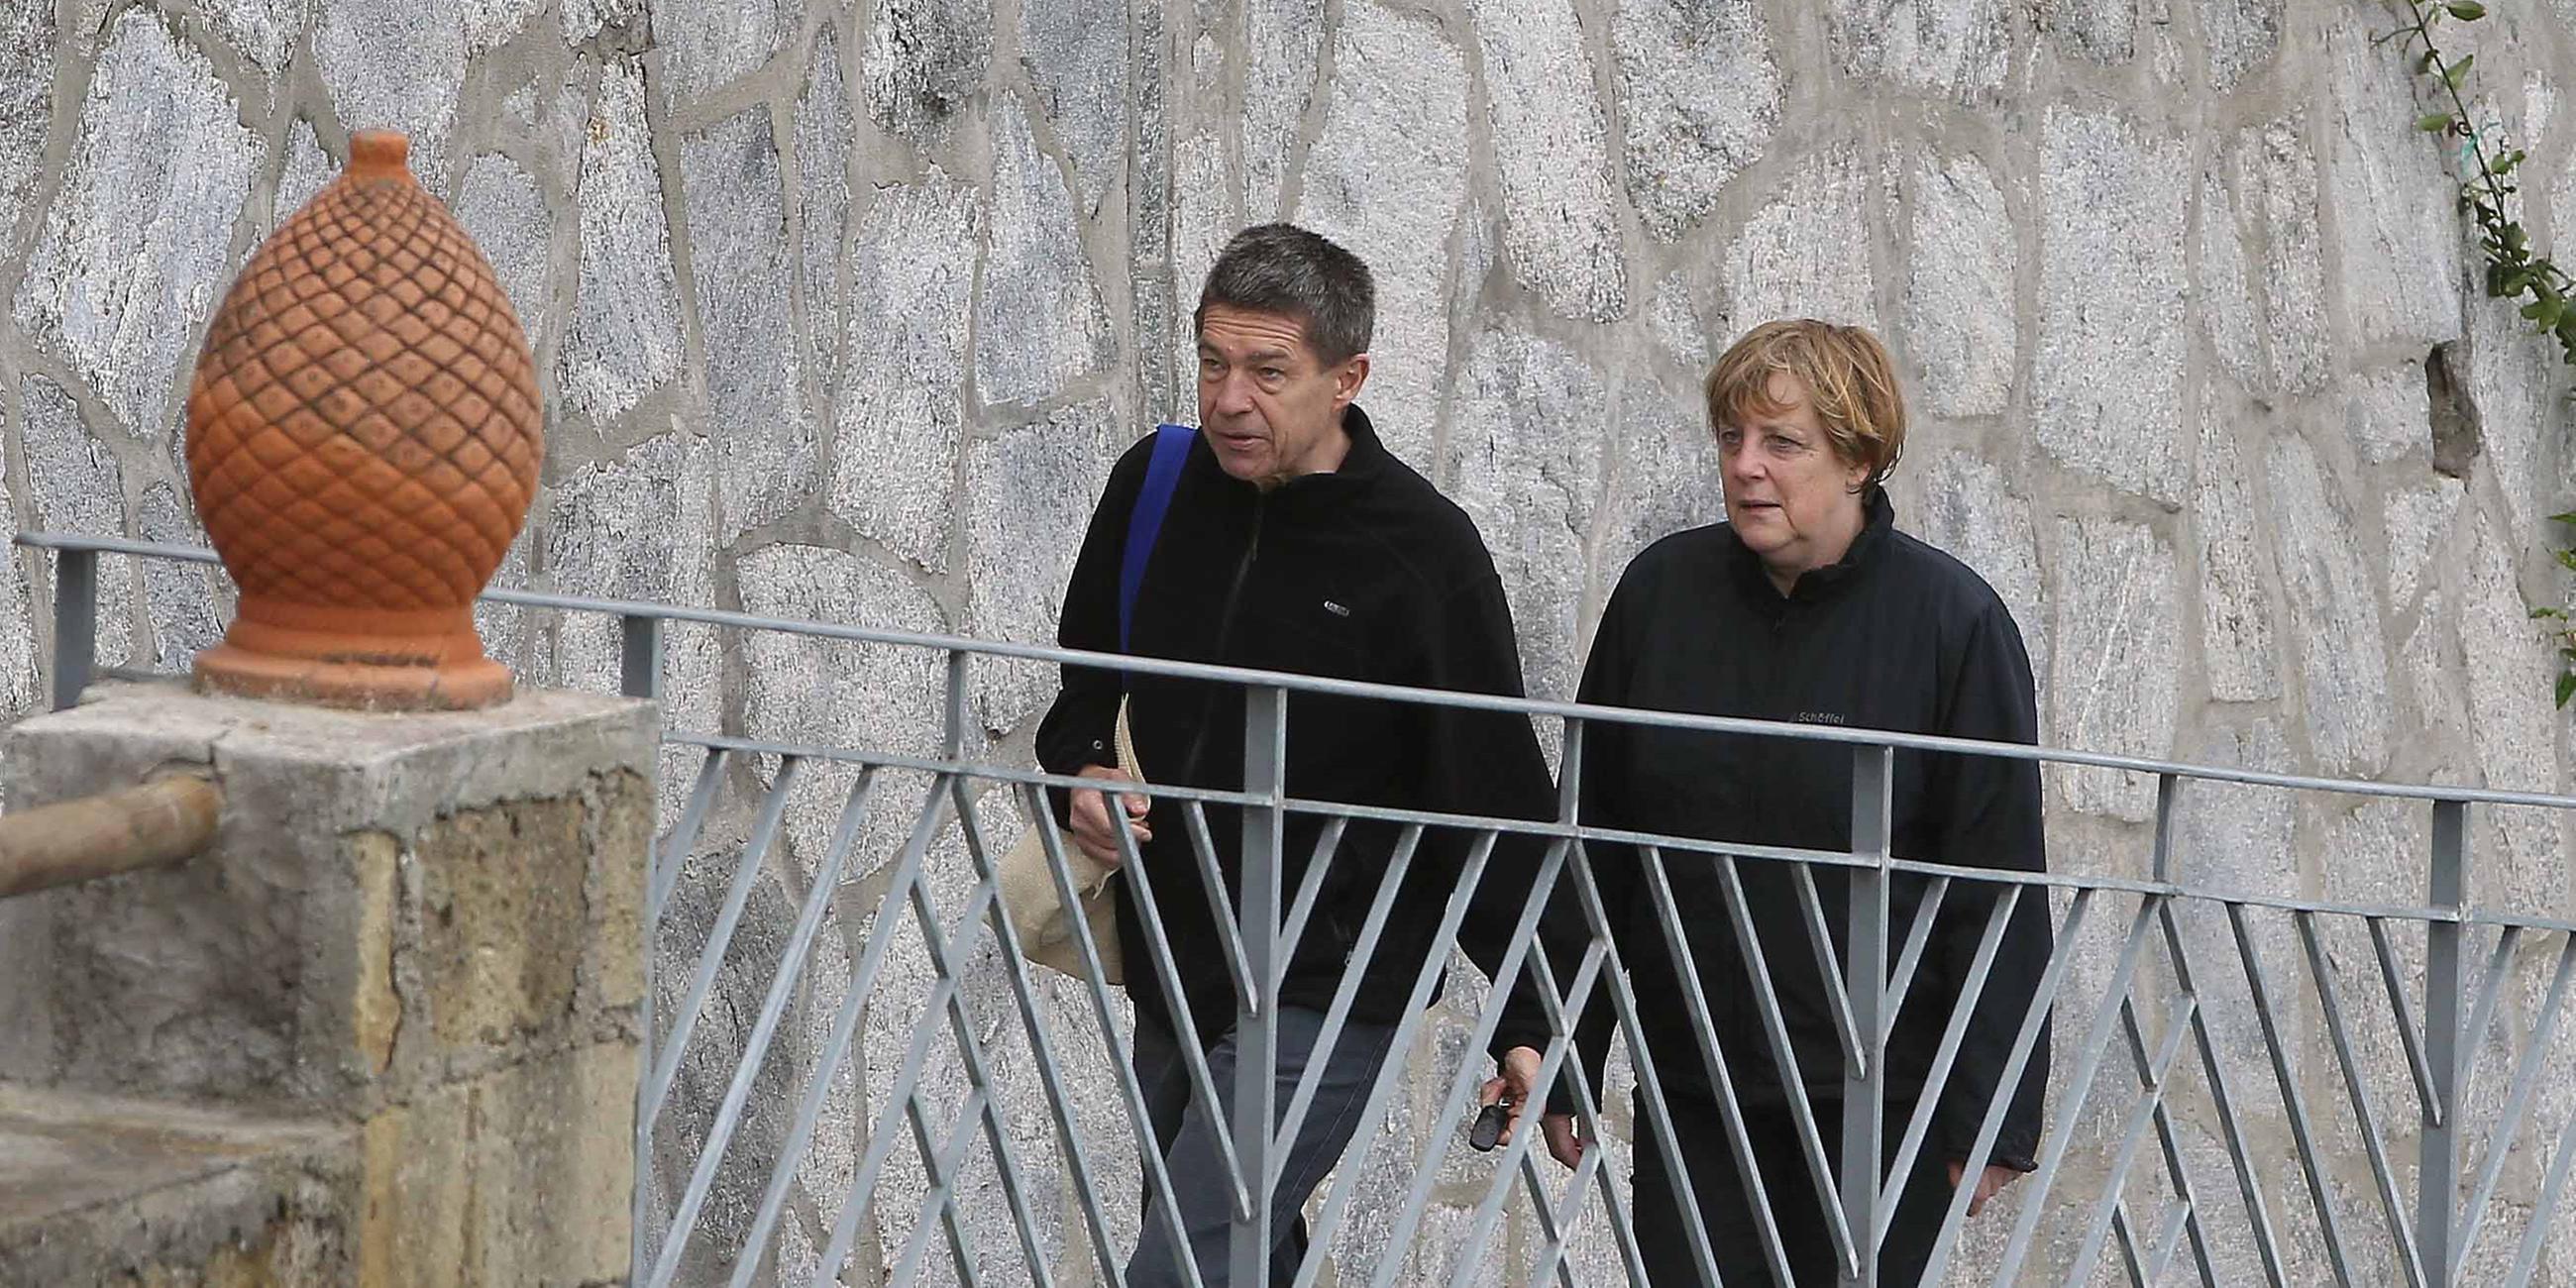 Das Bild zeigt Angela Merkel und ihren Ehemann Joachim Sauer vor einer Mauer.